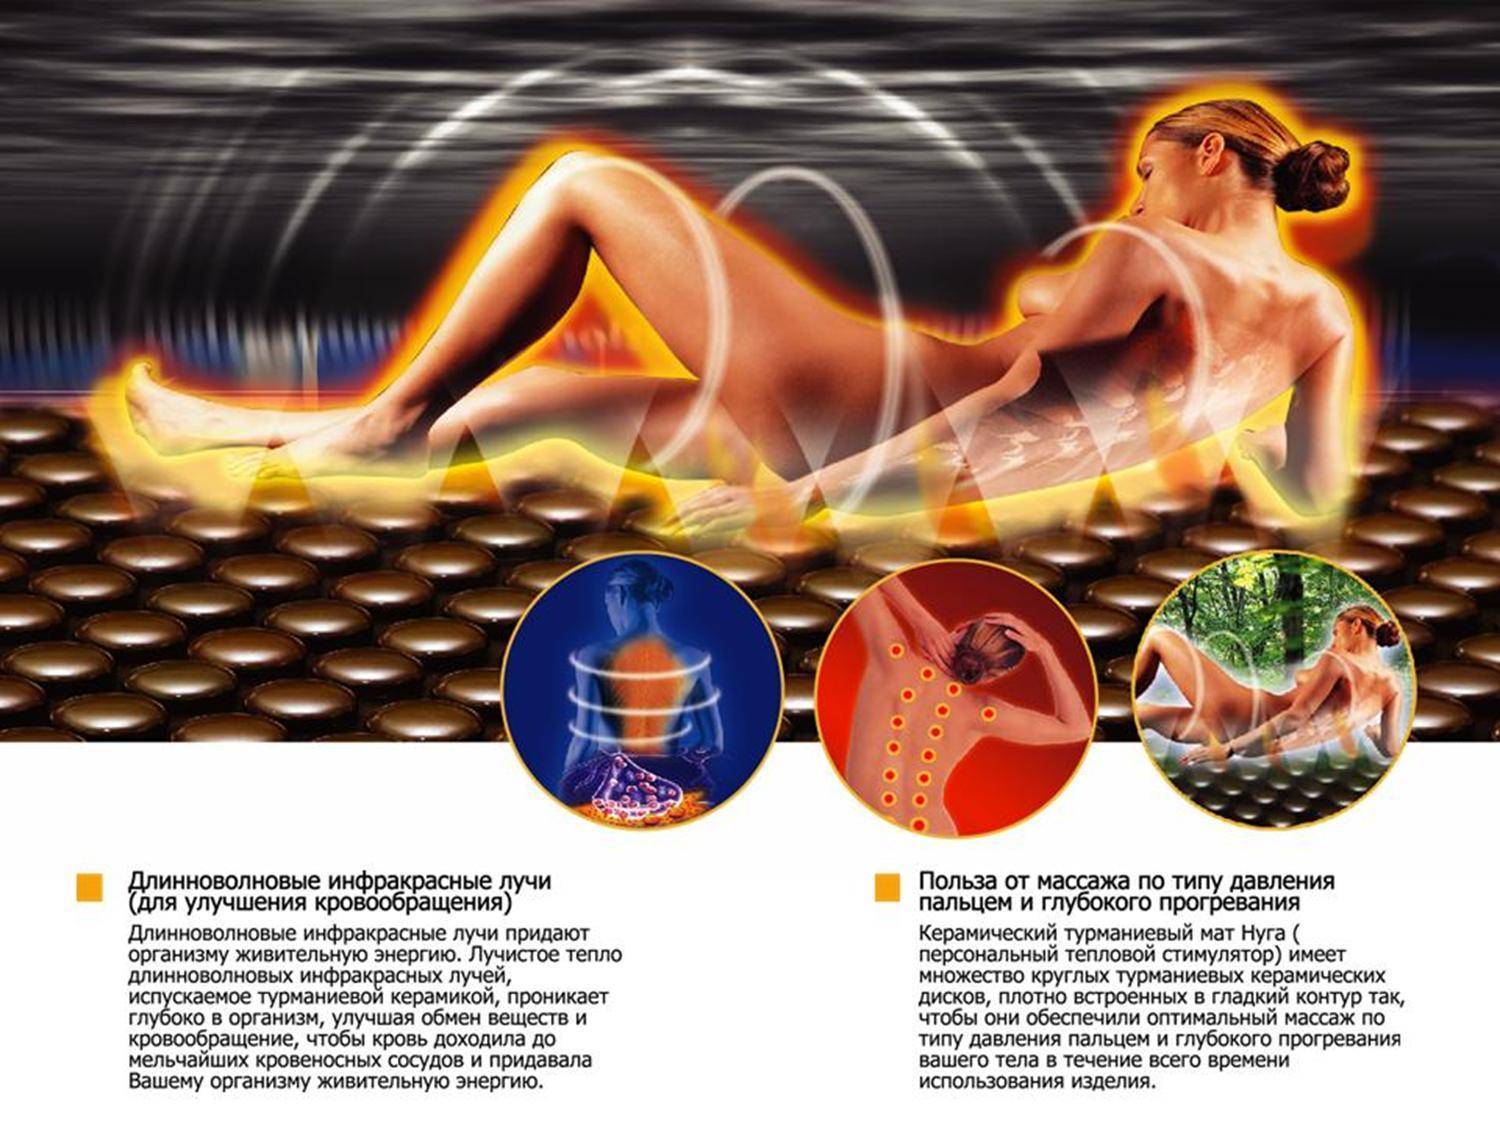 Инфракрасная сауна: что это такое, польза и вред для организма человека